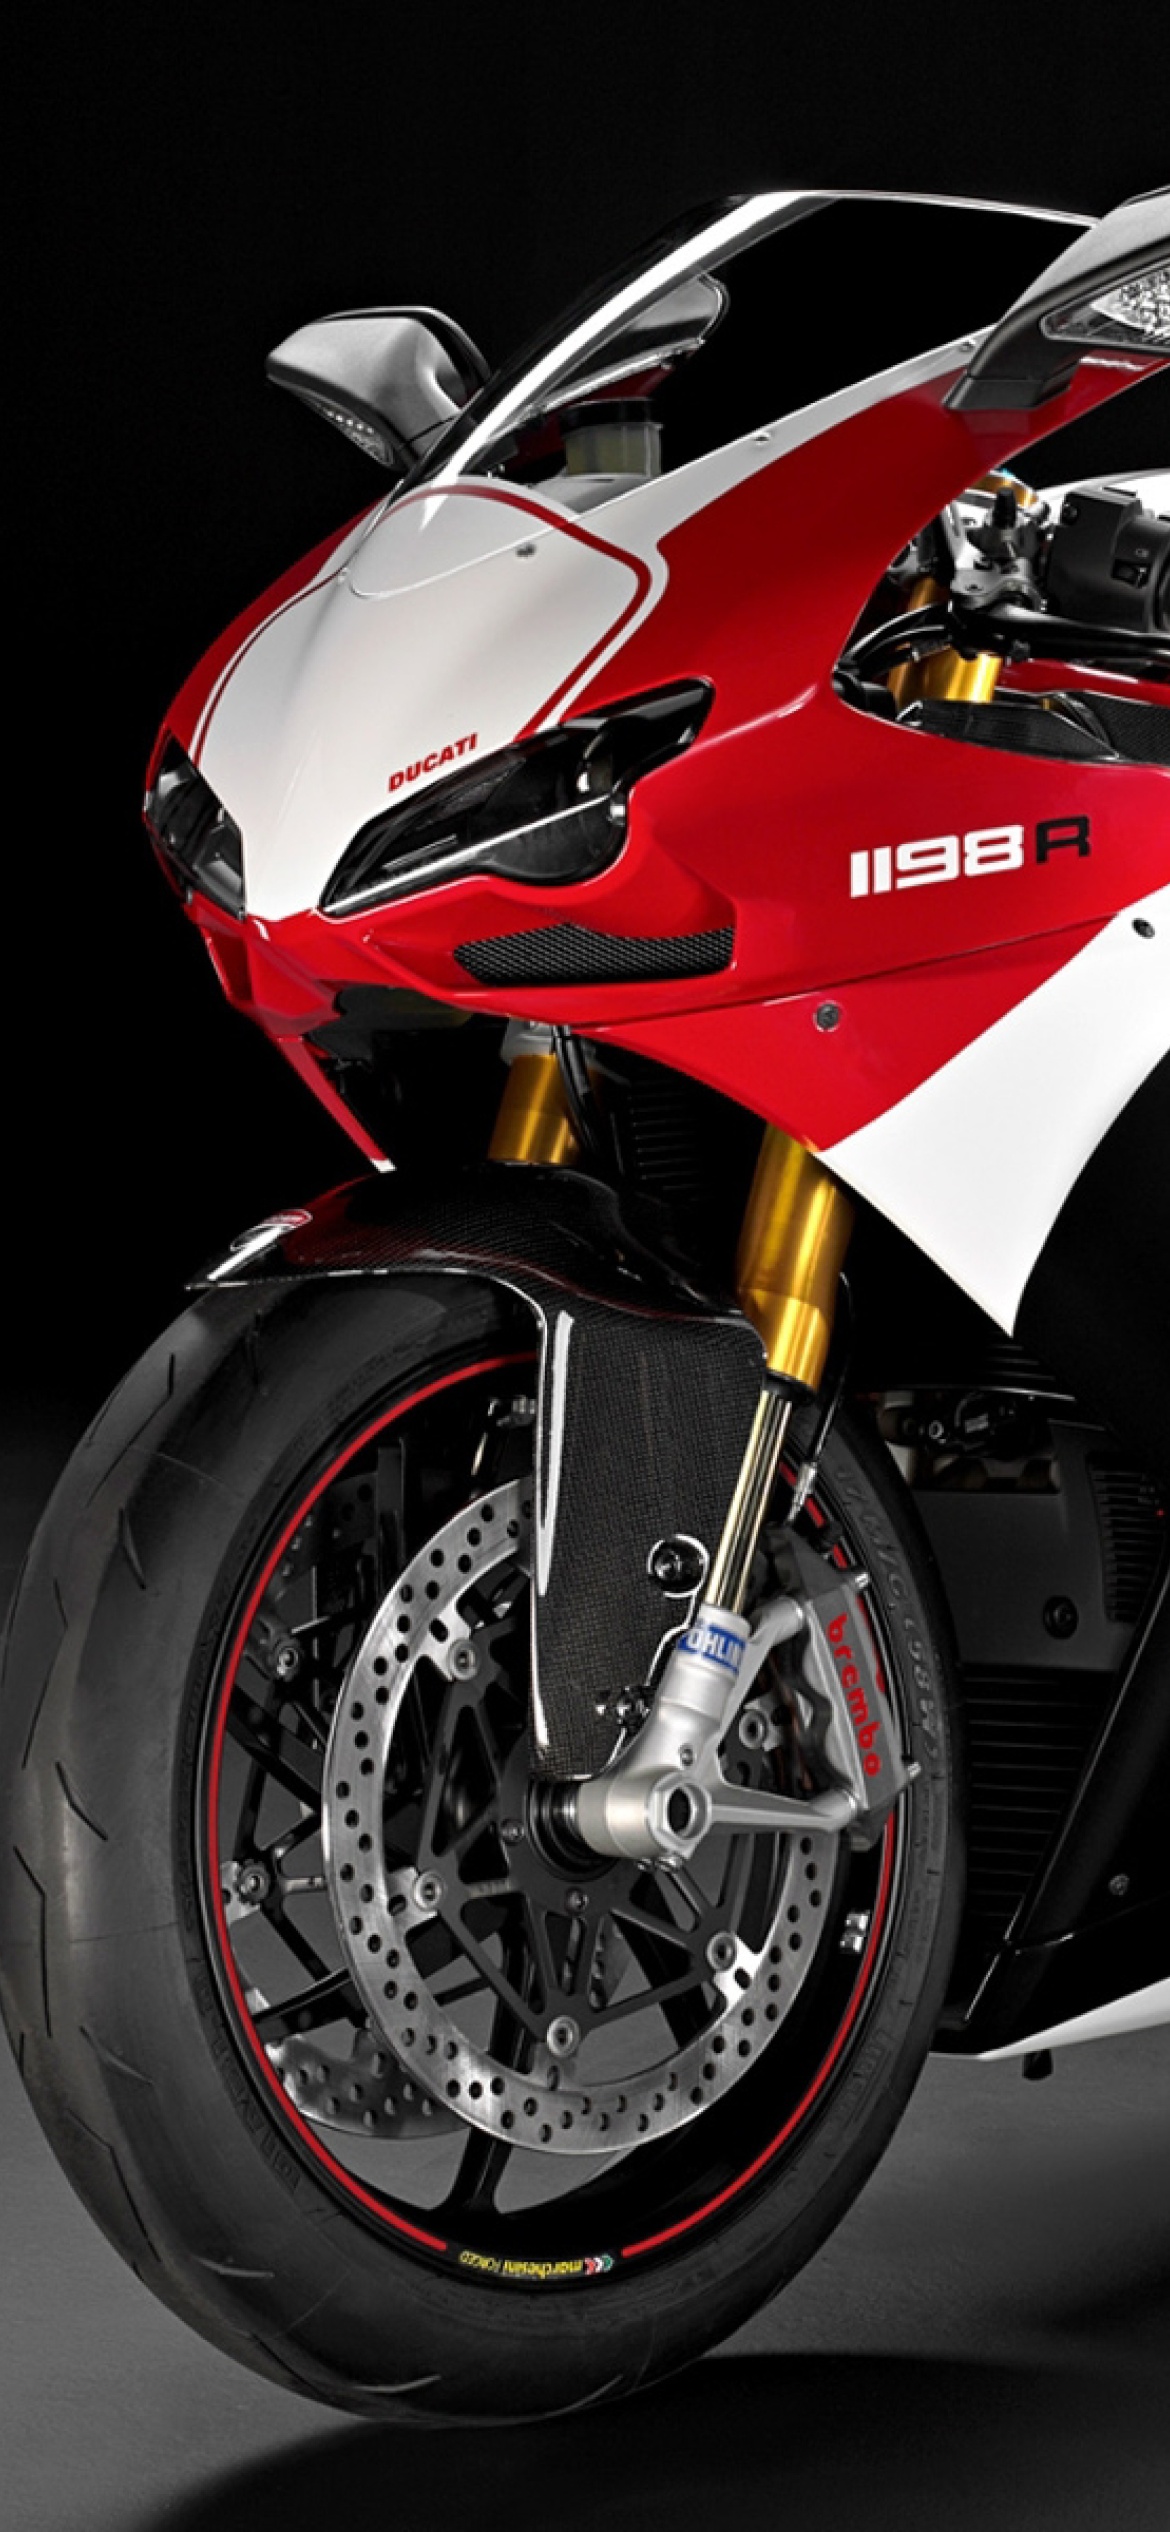 Superbike Ducati 1198 R screenshot #1 1170x2532